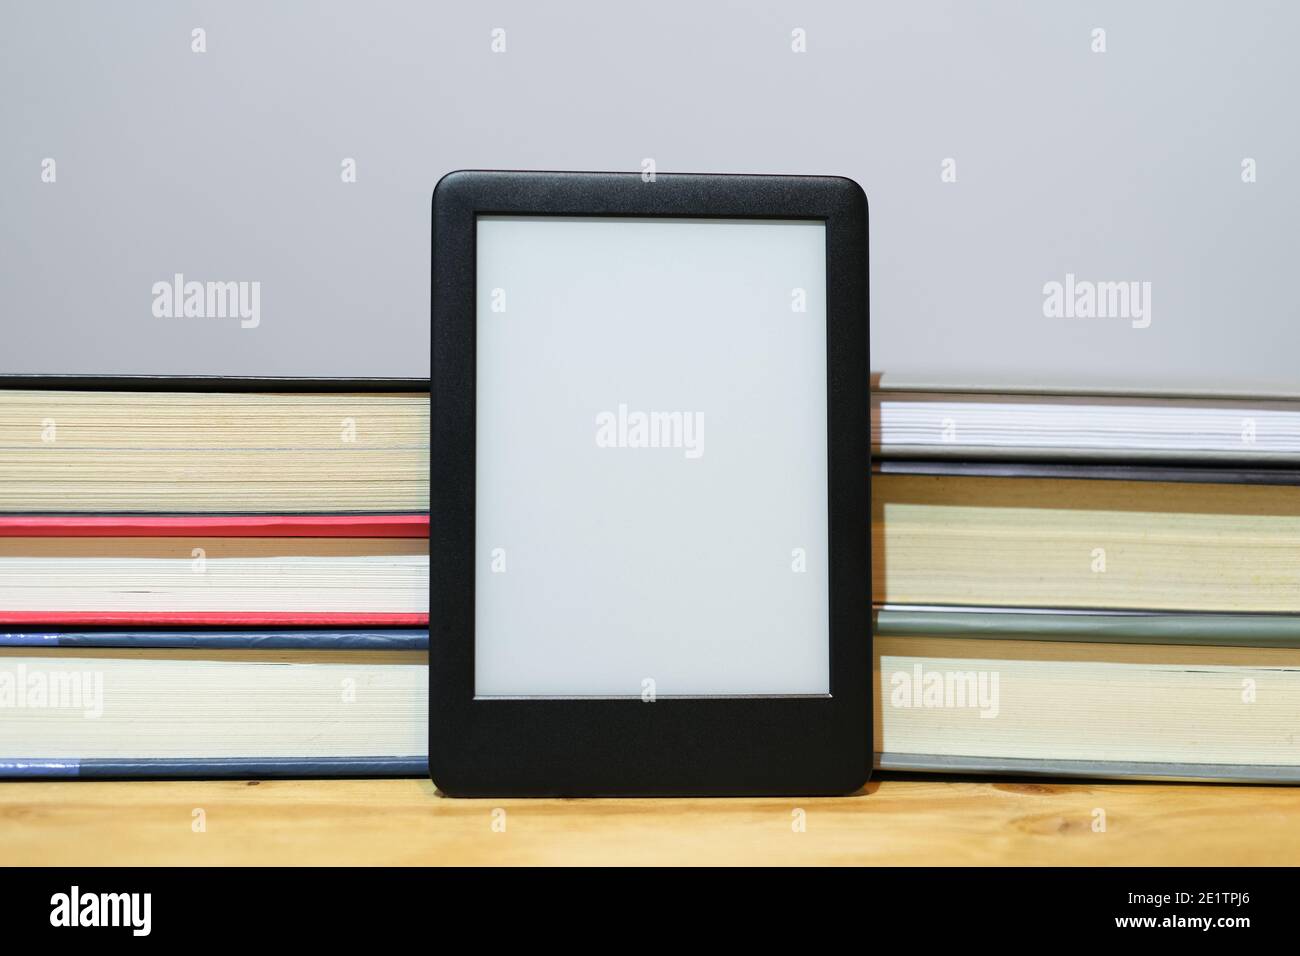 Lecteur de livres électroniques numériques avec arrière-plan de livres papier classiques, nouvelles technologies de la connaissance Banque D'Images